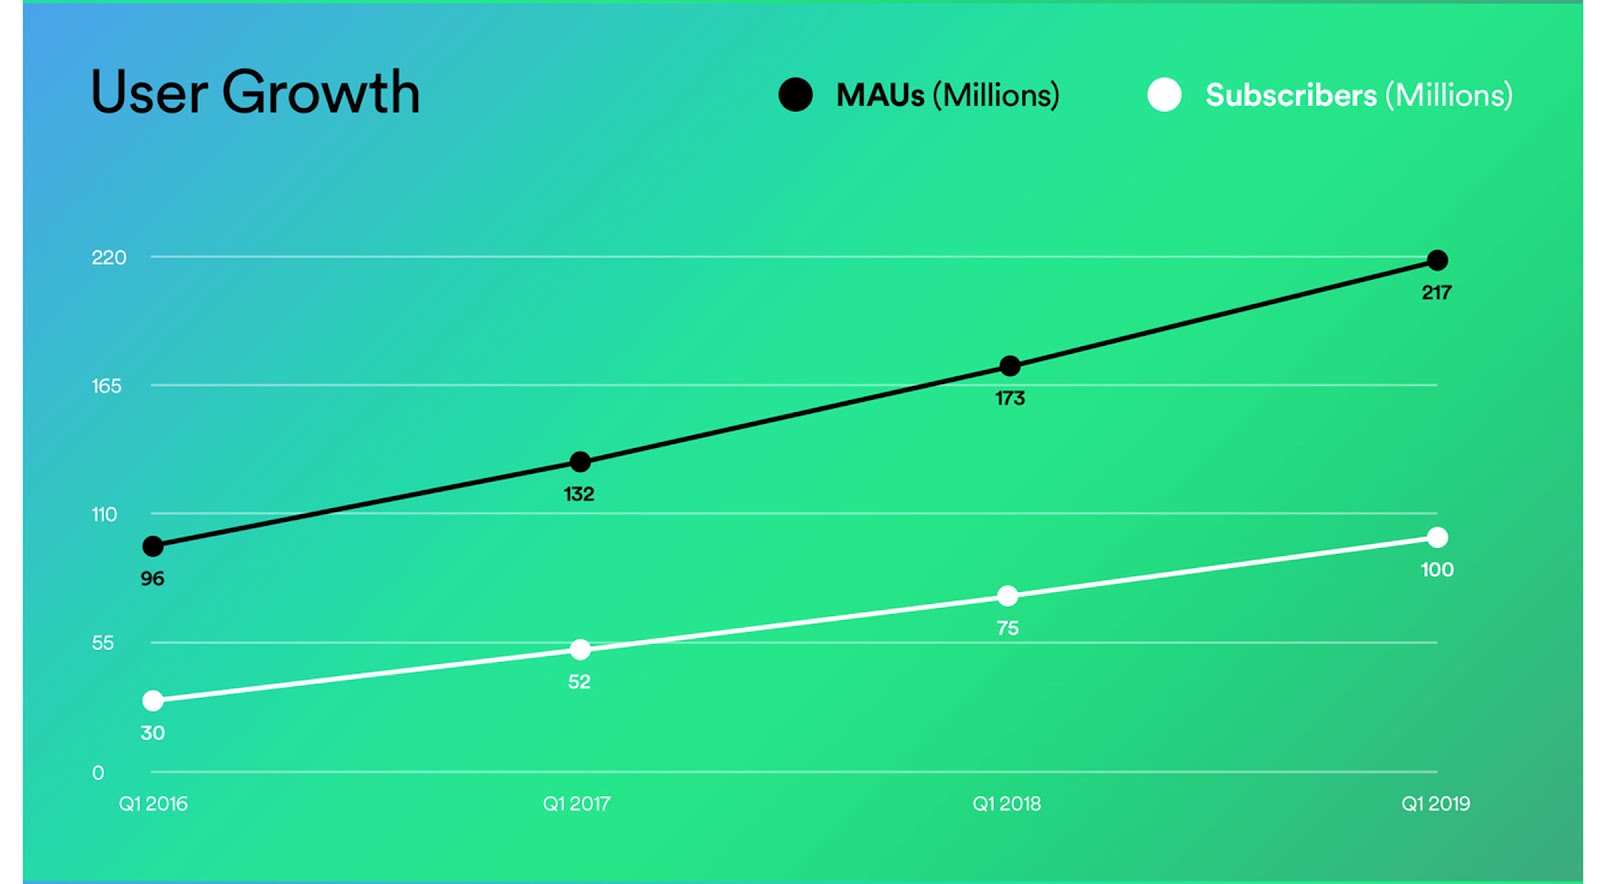 Spotify ahora tiene 100 millones de suscriptores pagos y 217 millones de usuarios activos mensuales en total; mercadeo de muestras de productos